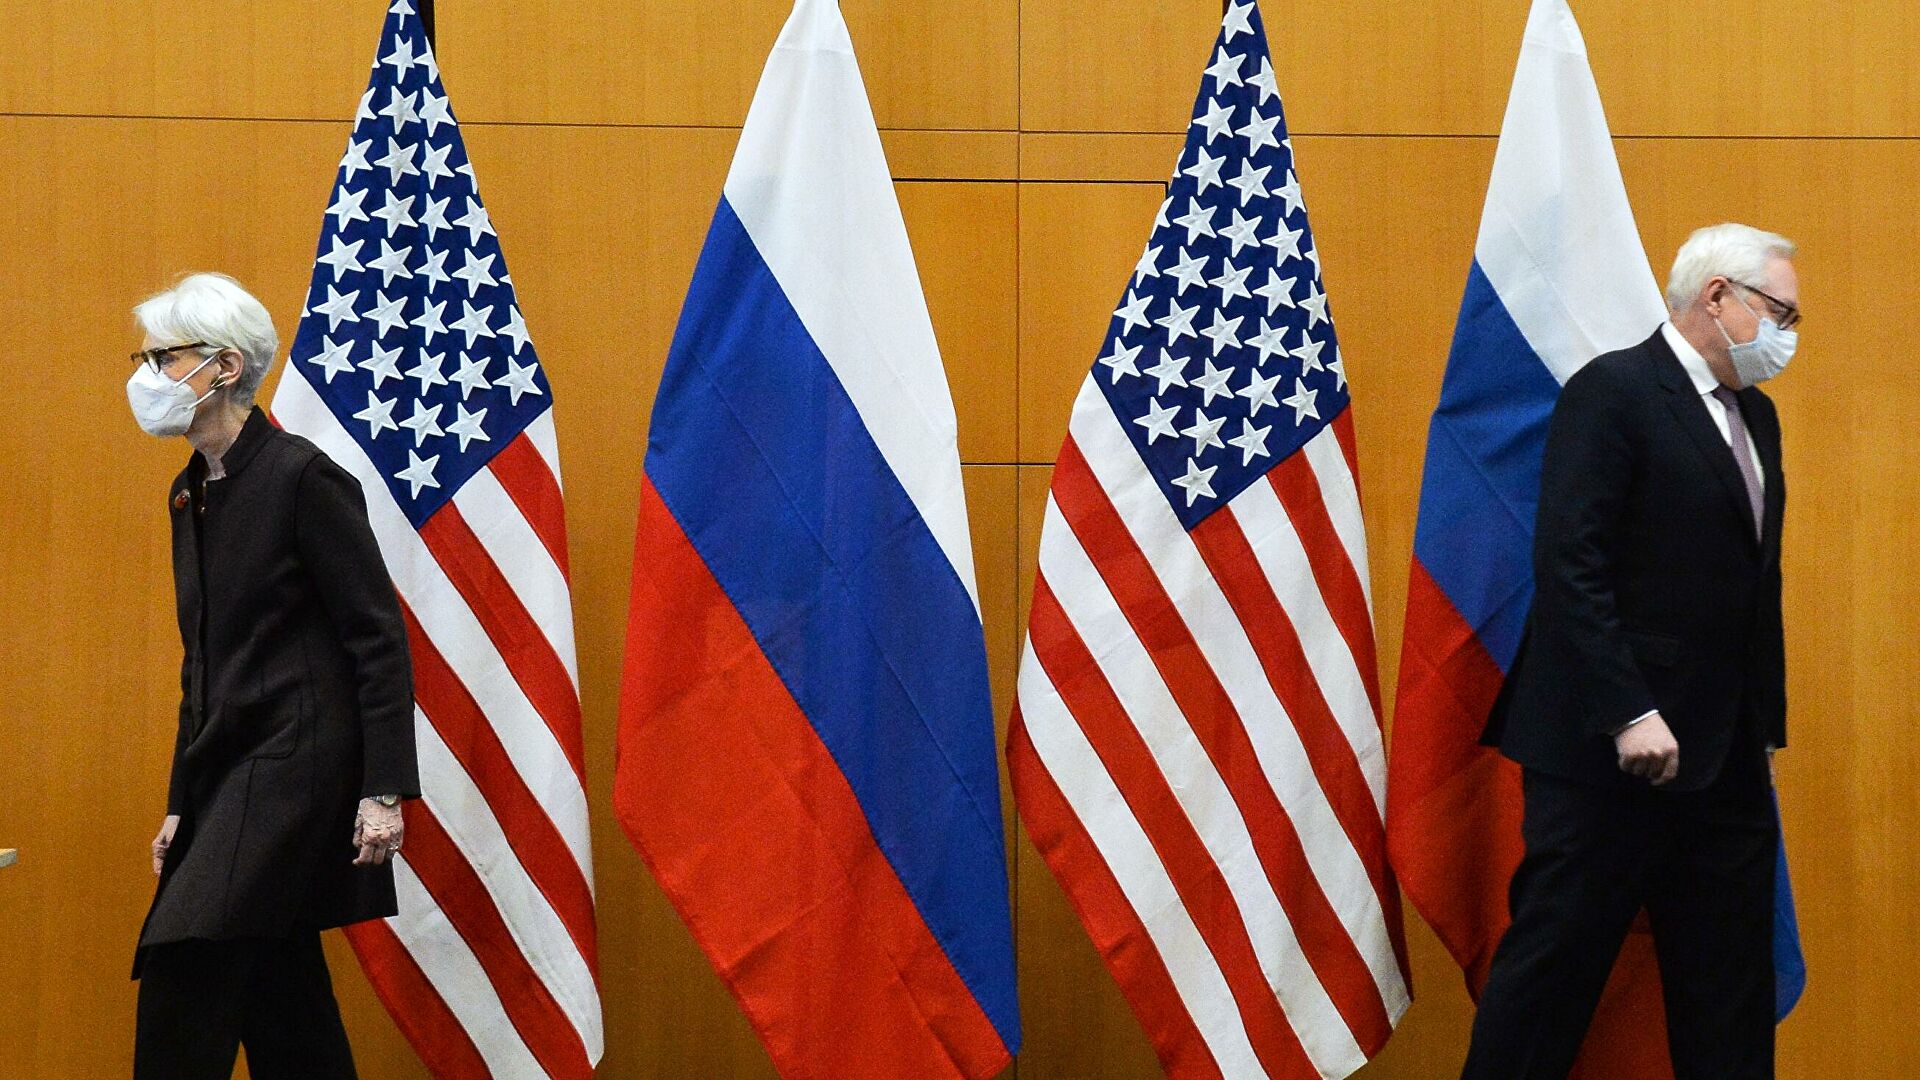 Президент США Байден: три раунда переговоров с Россией по безопасности не дали результатов